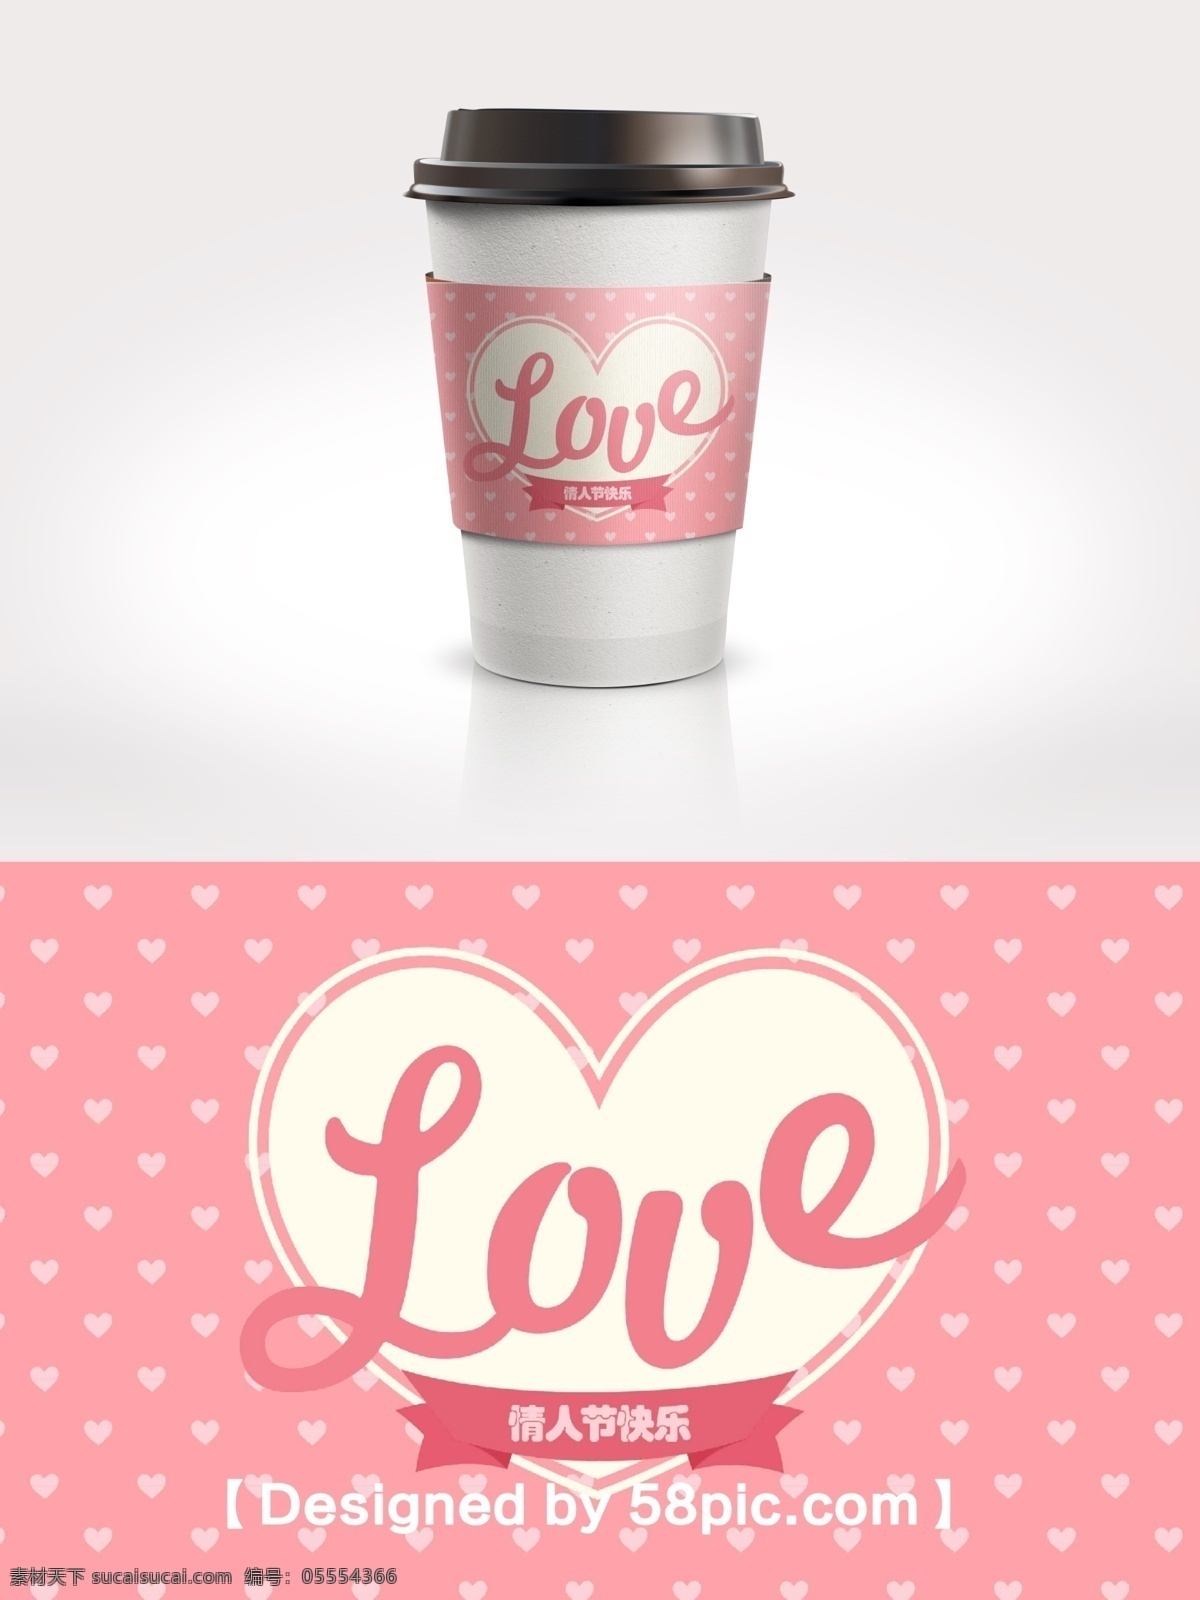 浪漫 清新 粉色 爱心 情人节 咖啡杯 套 love psd素材 爱心素材 广告设计模版 节日包装 咖啡杯套设计 浪漫清新